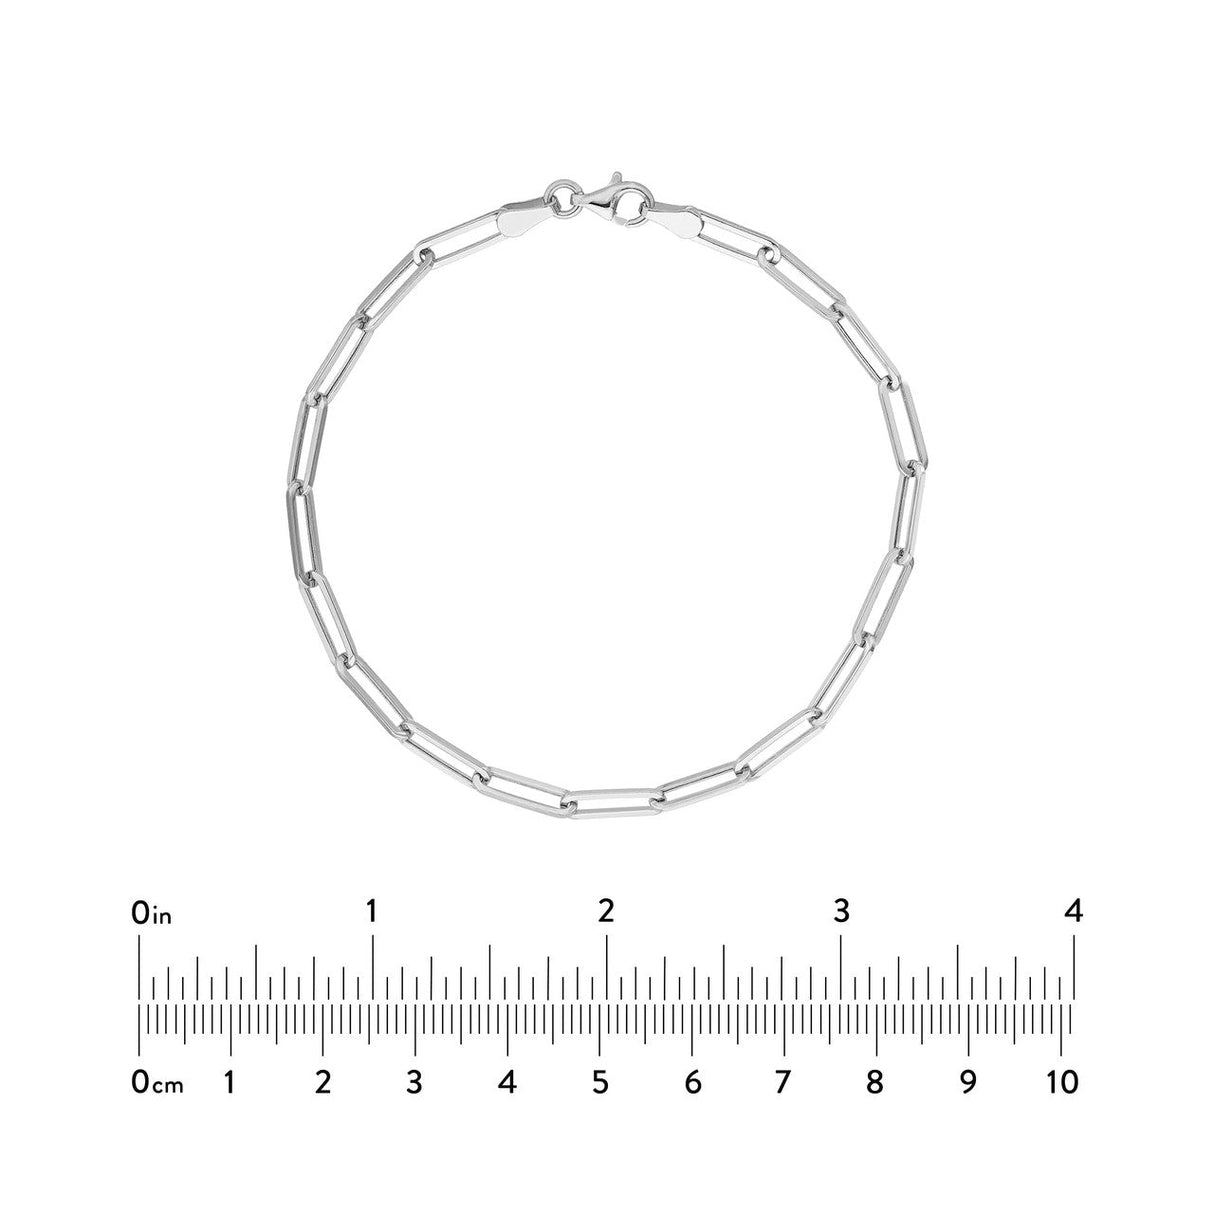 14K Gold Bracelet Designer Long Link Chain, Gold Bracelets, - Diamond Origin